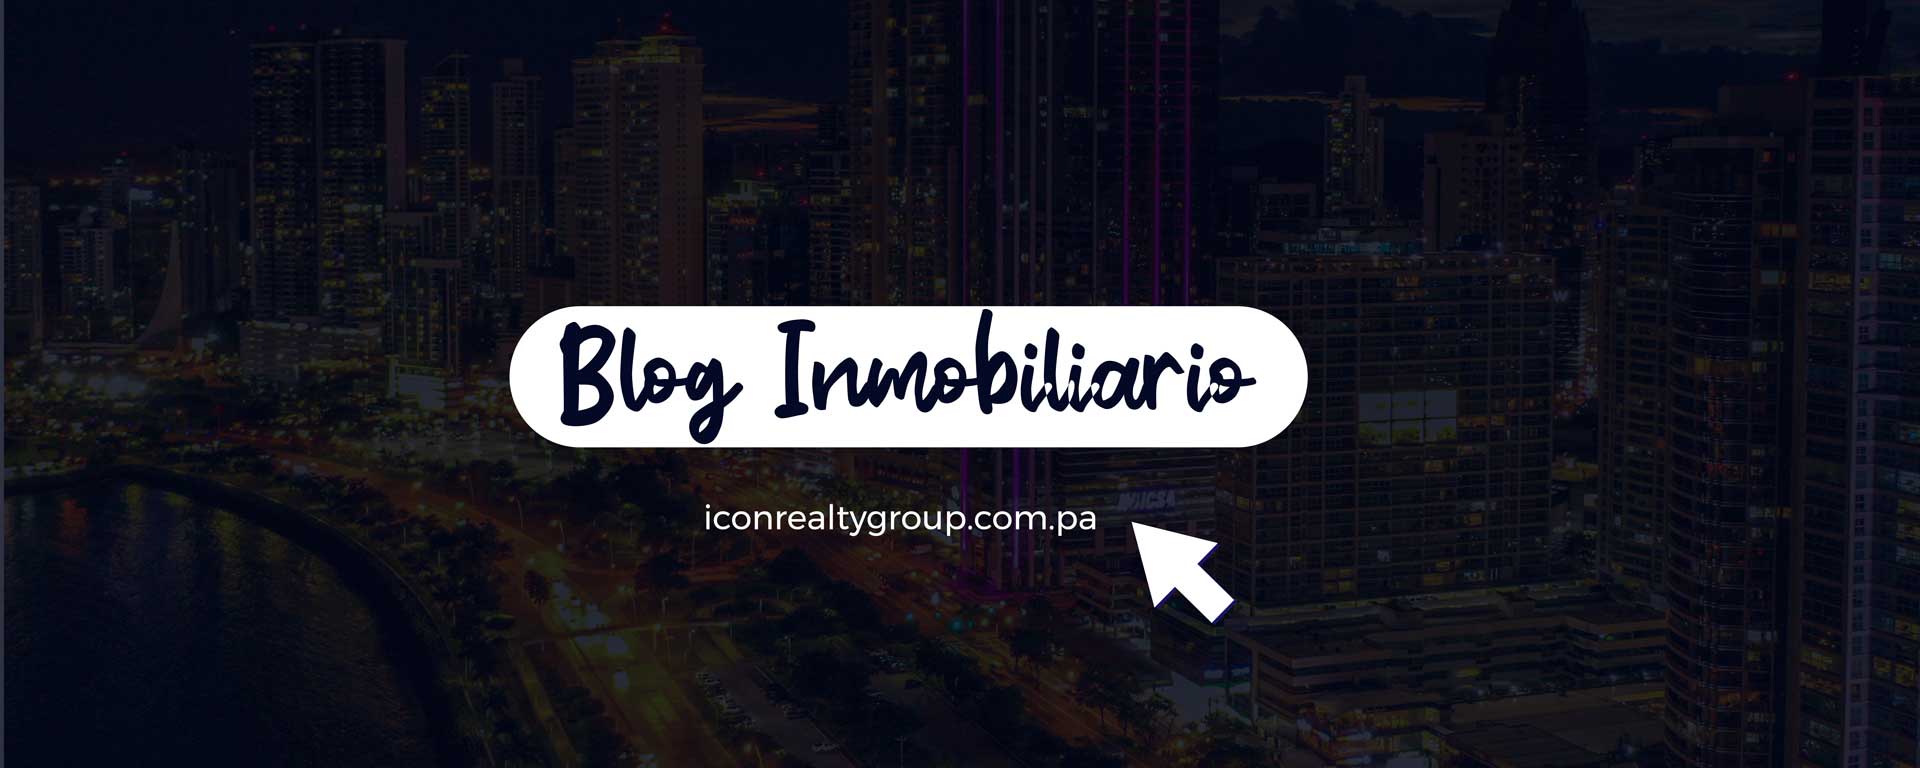 Blog inmobiliario Icon Group